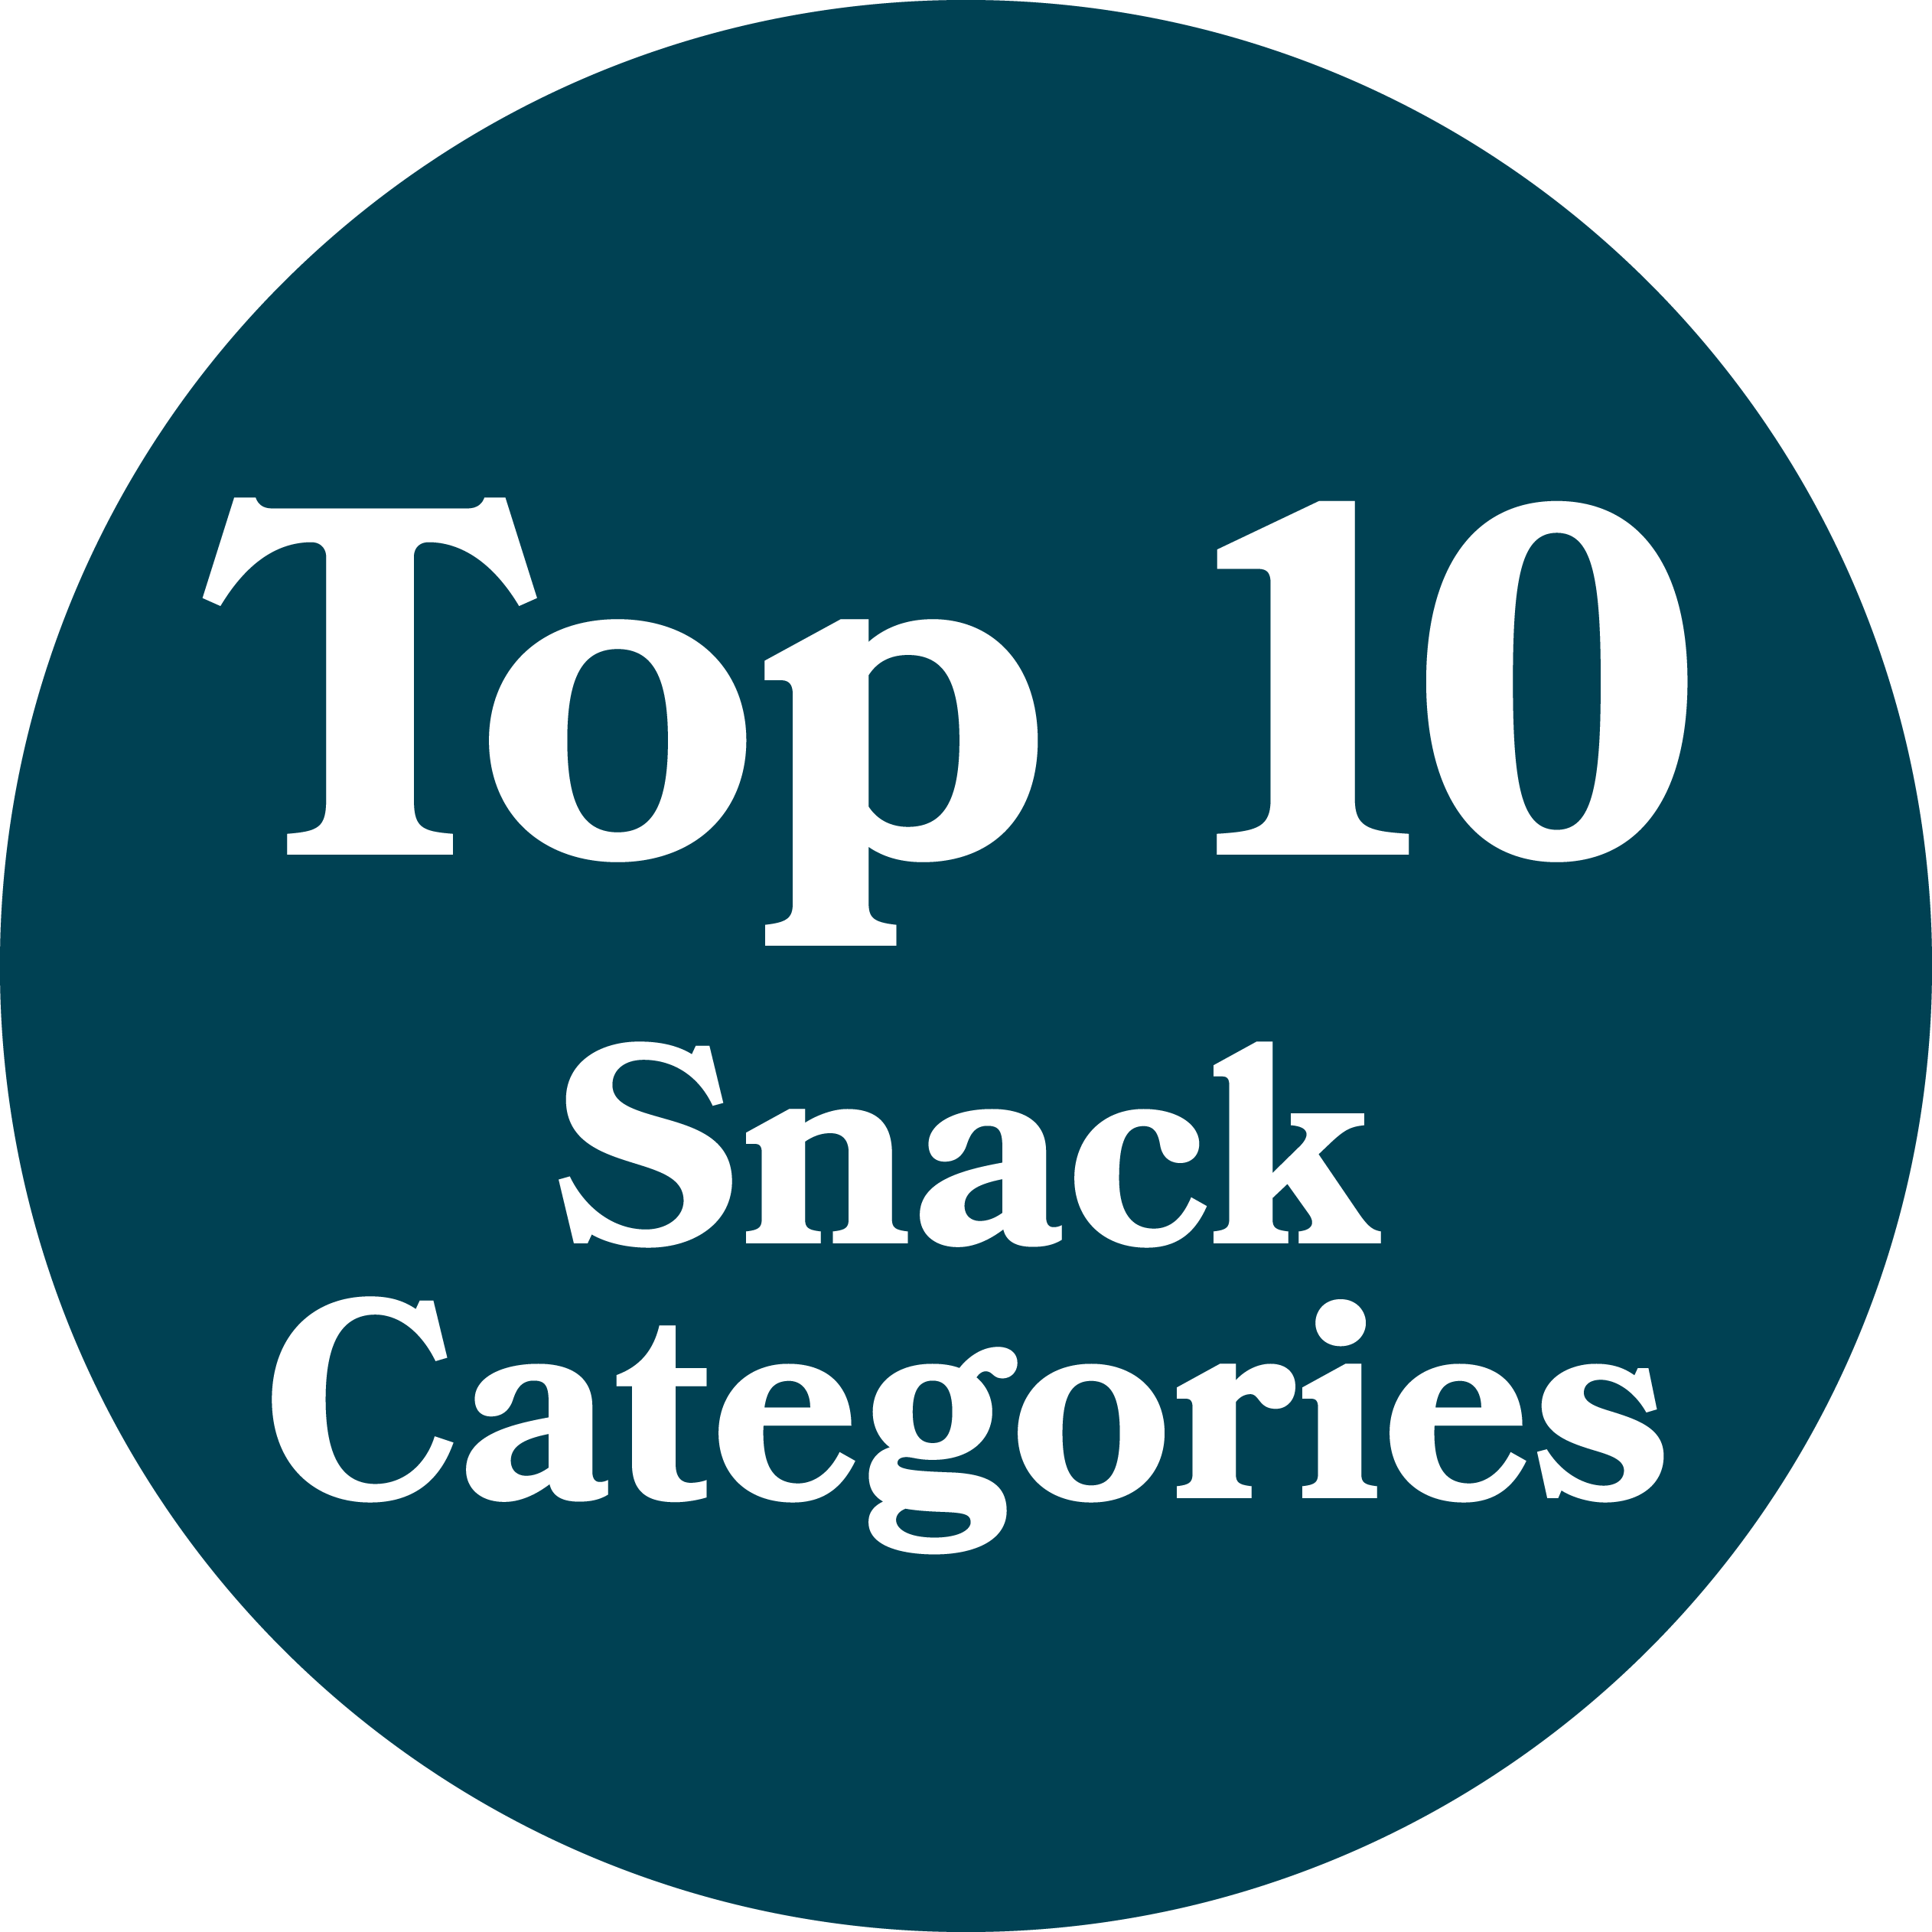 Top 10 snack categories